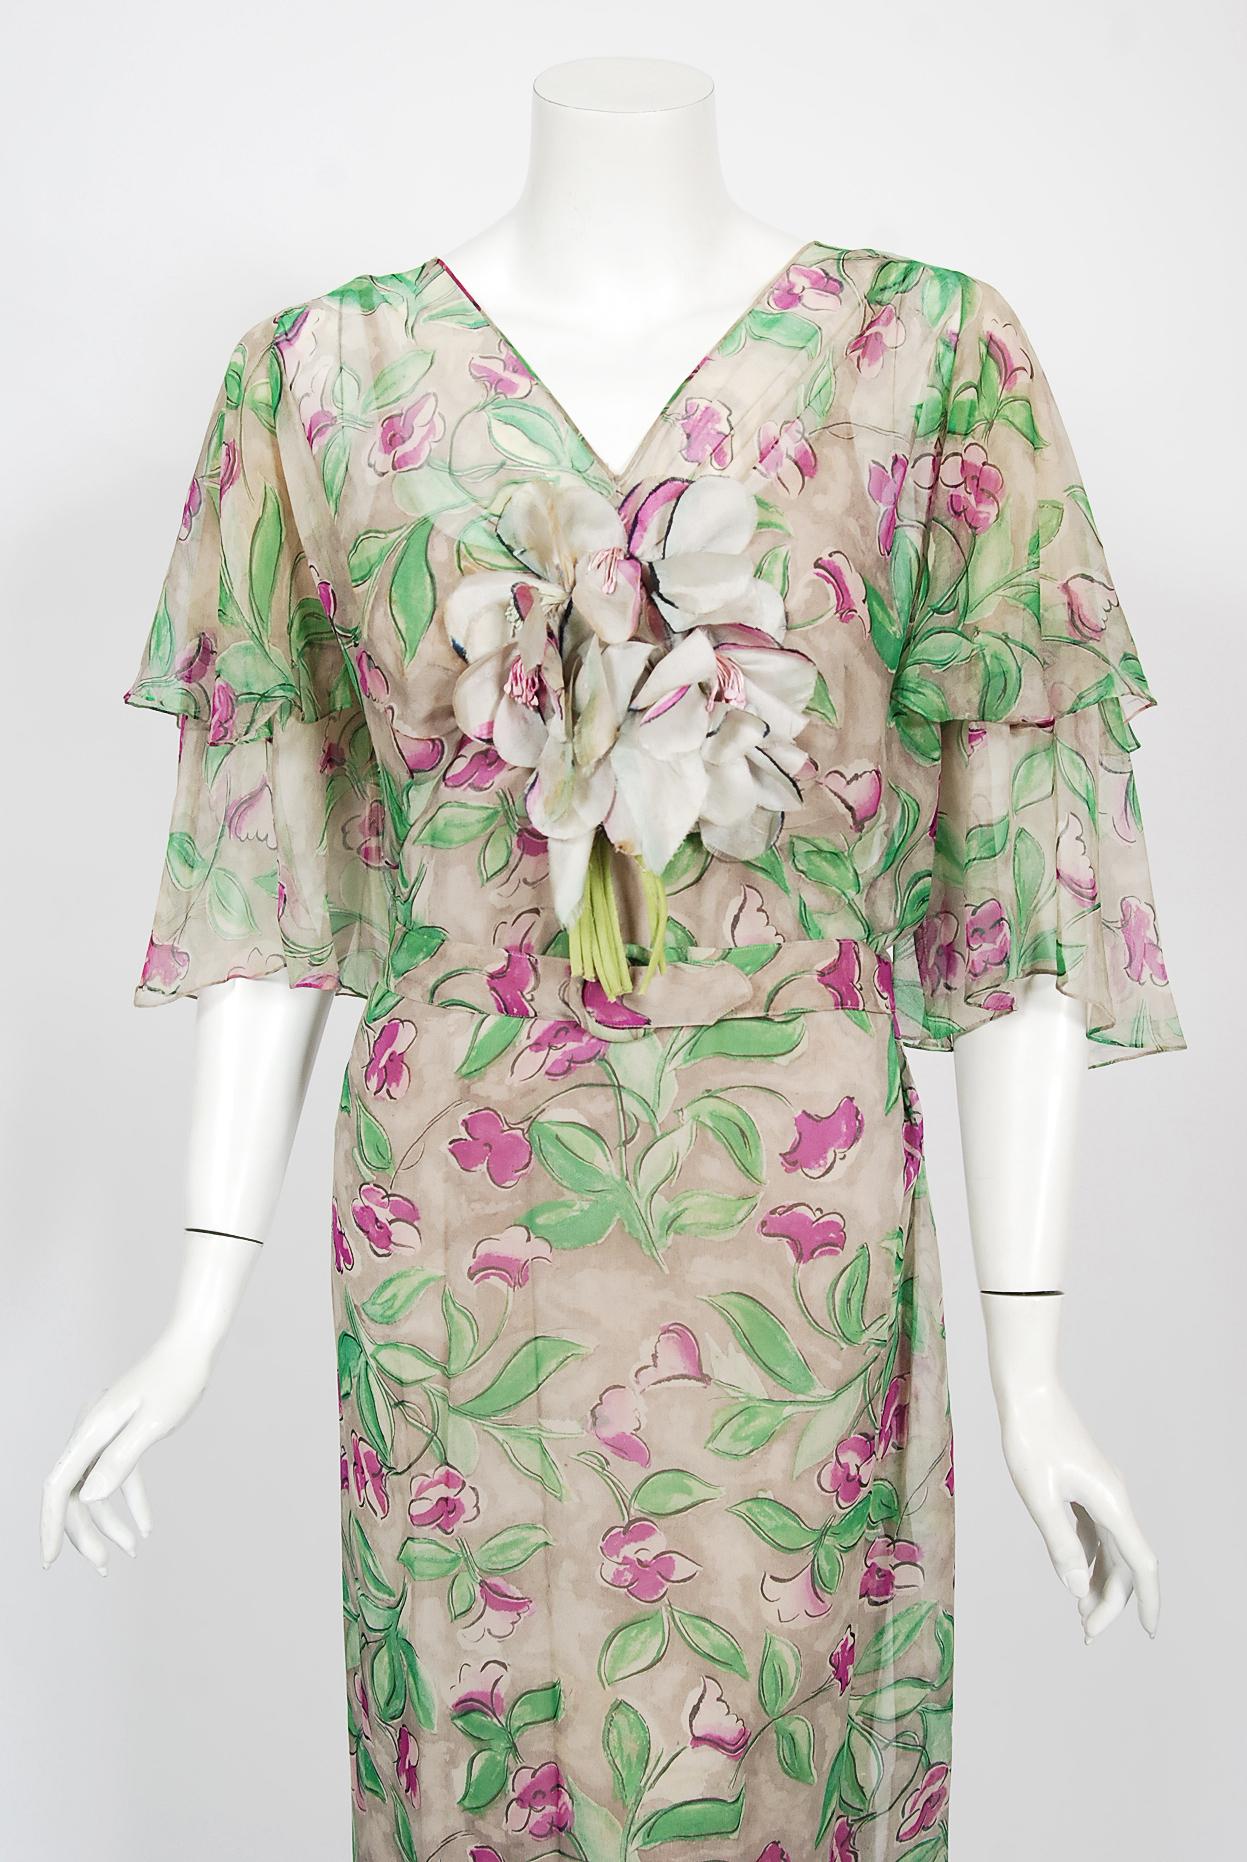 Une magnifique robe en mousseline de soie de la Fashion Originators Guild, datant du milieu des années 1930, qui fait l'objet d'une grande collection. La Guild a été créée en 1932 pour protéger ses membres de la 